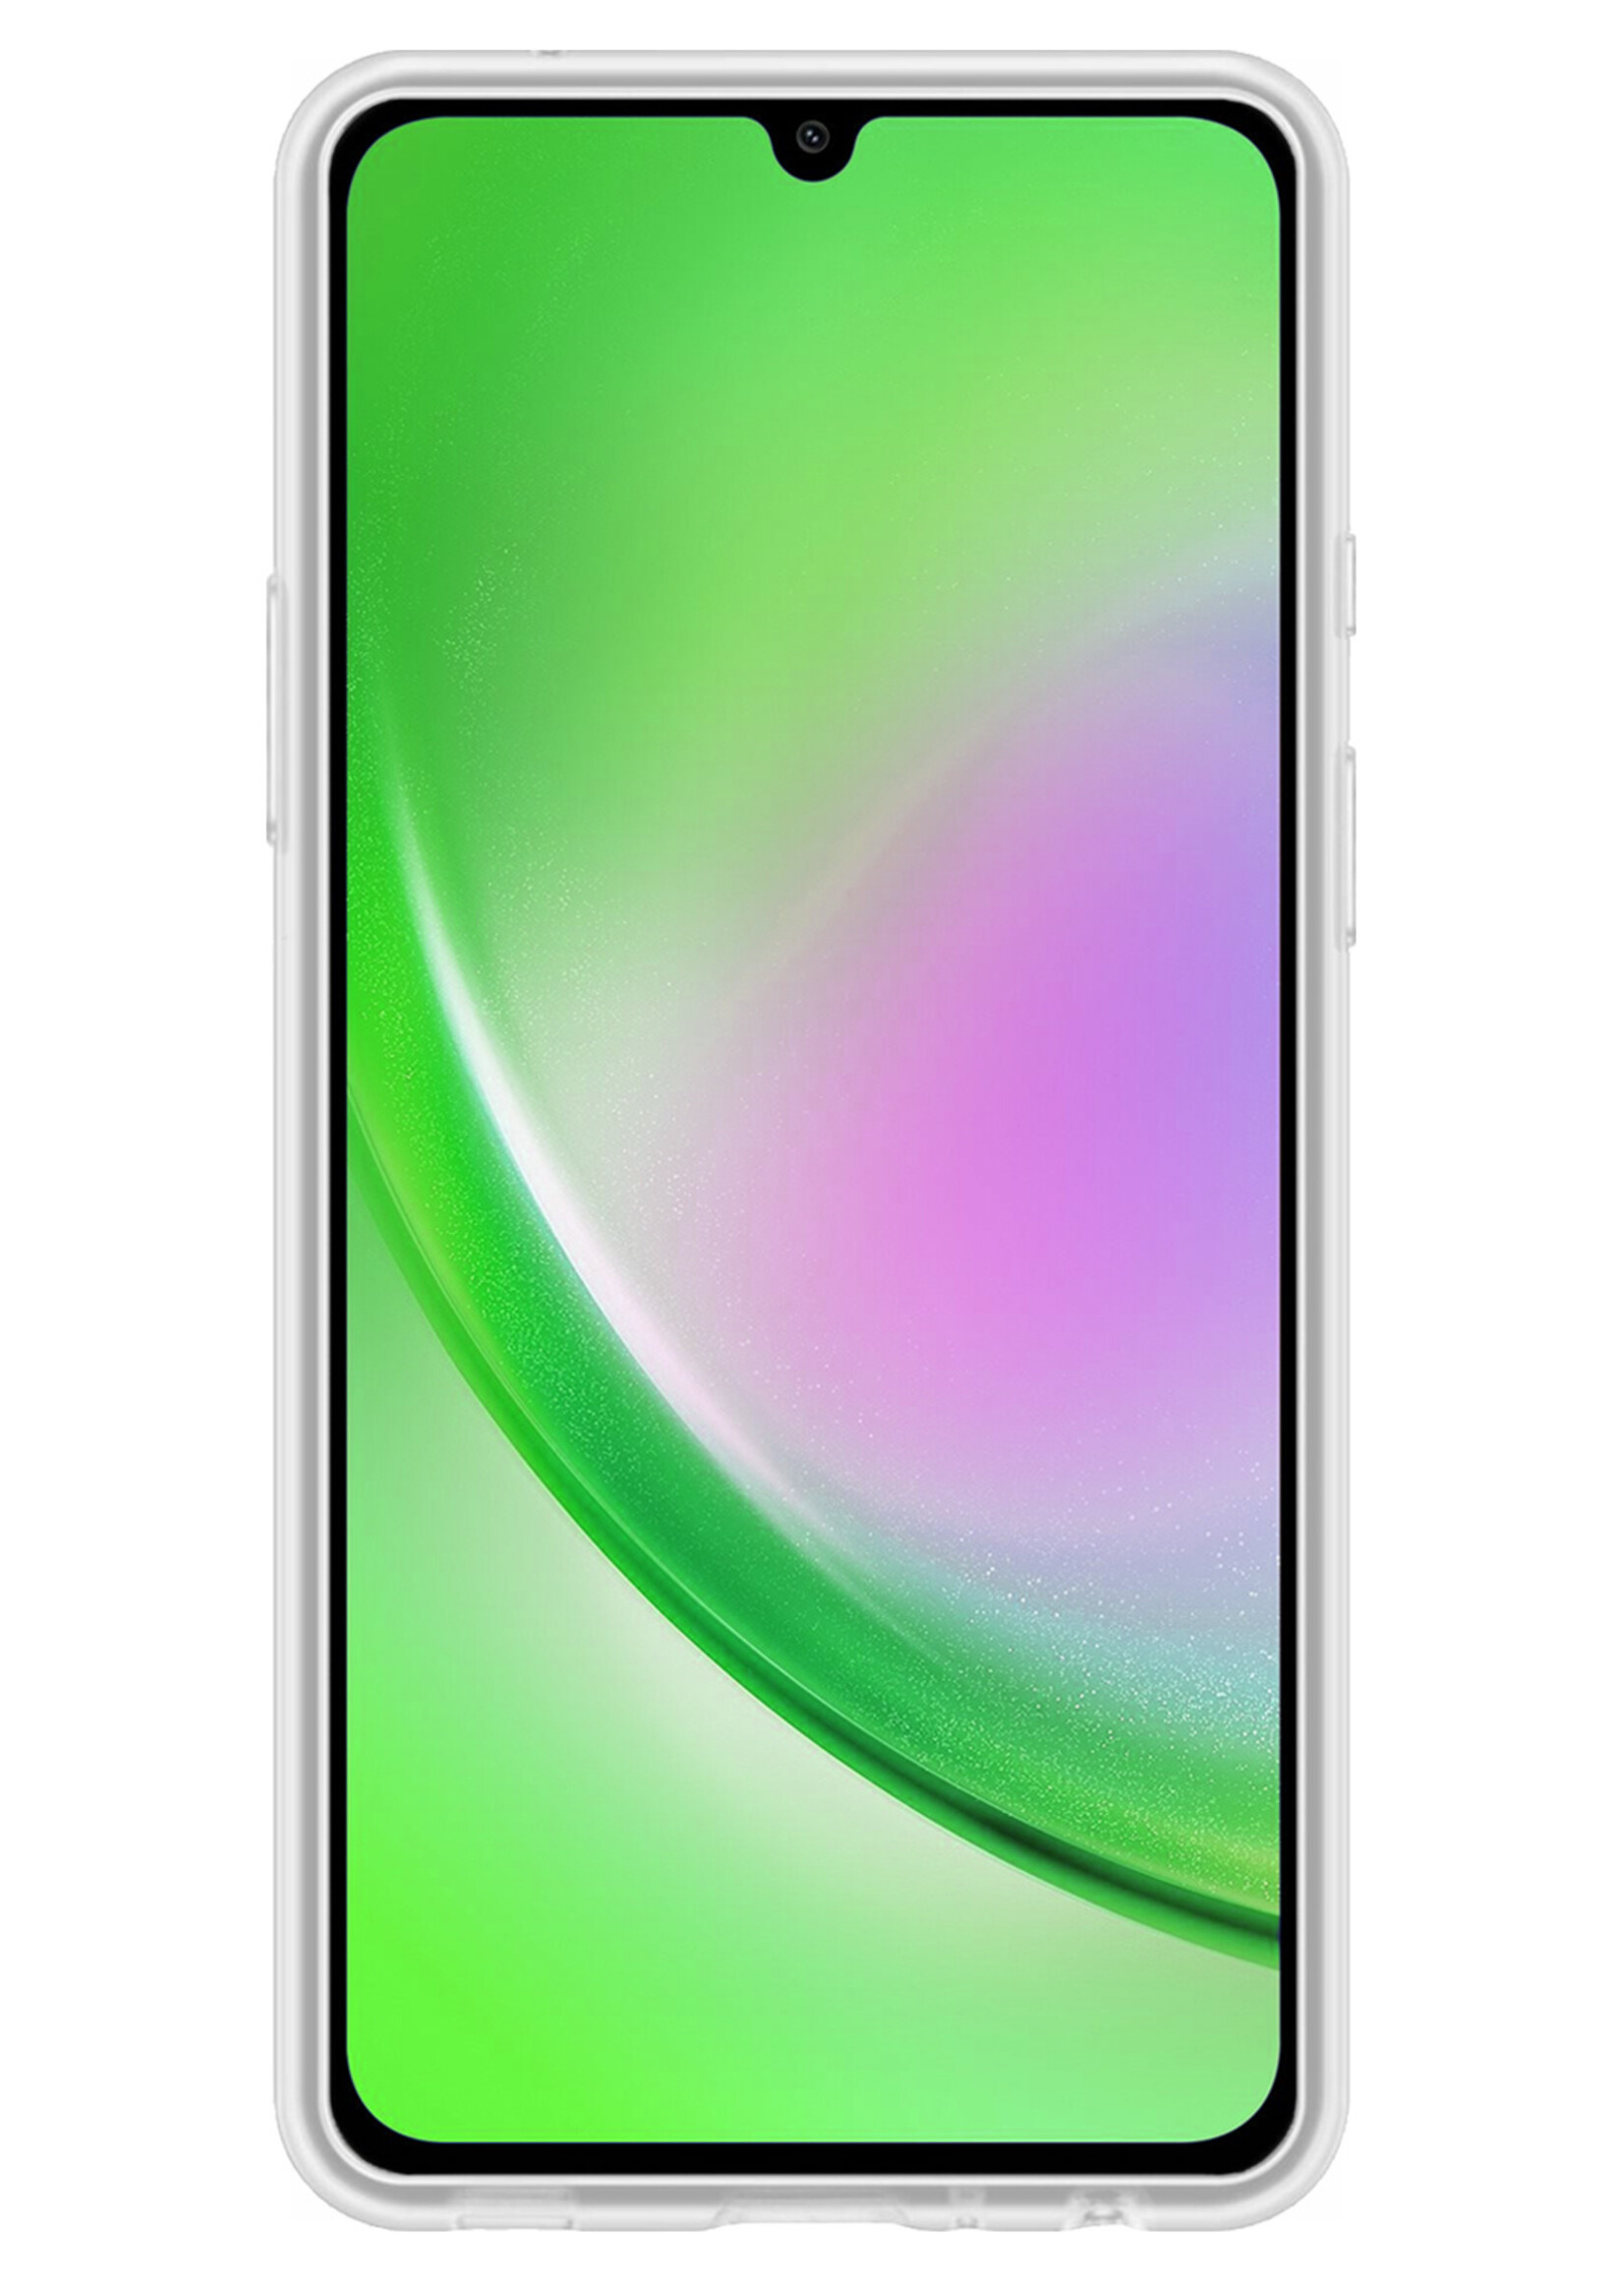 LUQ Hoesje Geschikt voor Samsung A34 Hoesje Siliconen Case - Hoes Geschikt voor Samsung Galaxy A34 Hoes Siliconen - Transparant - 2 Stuks